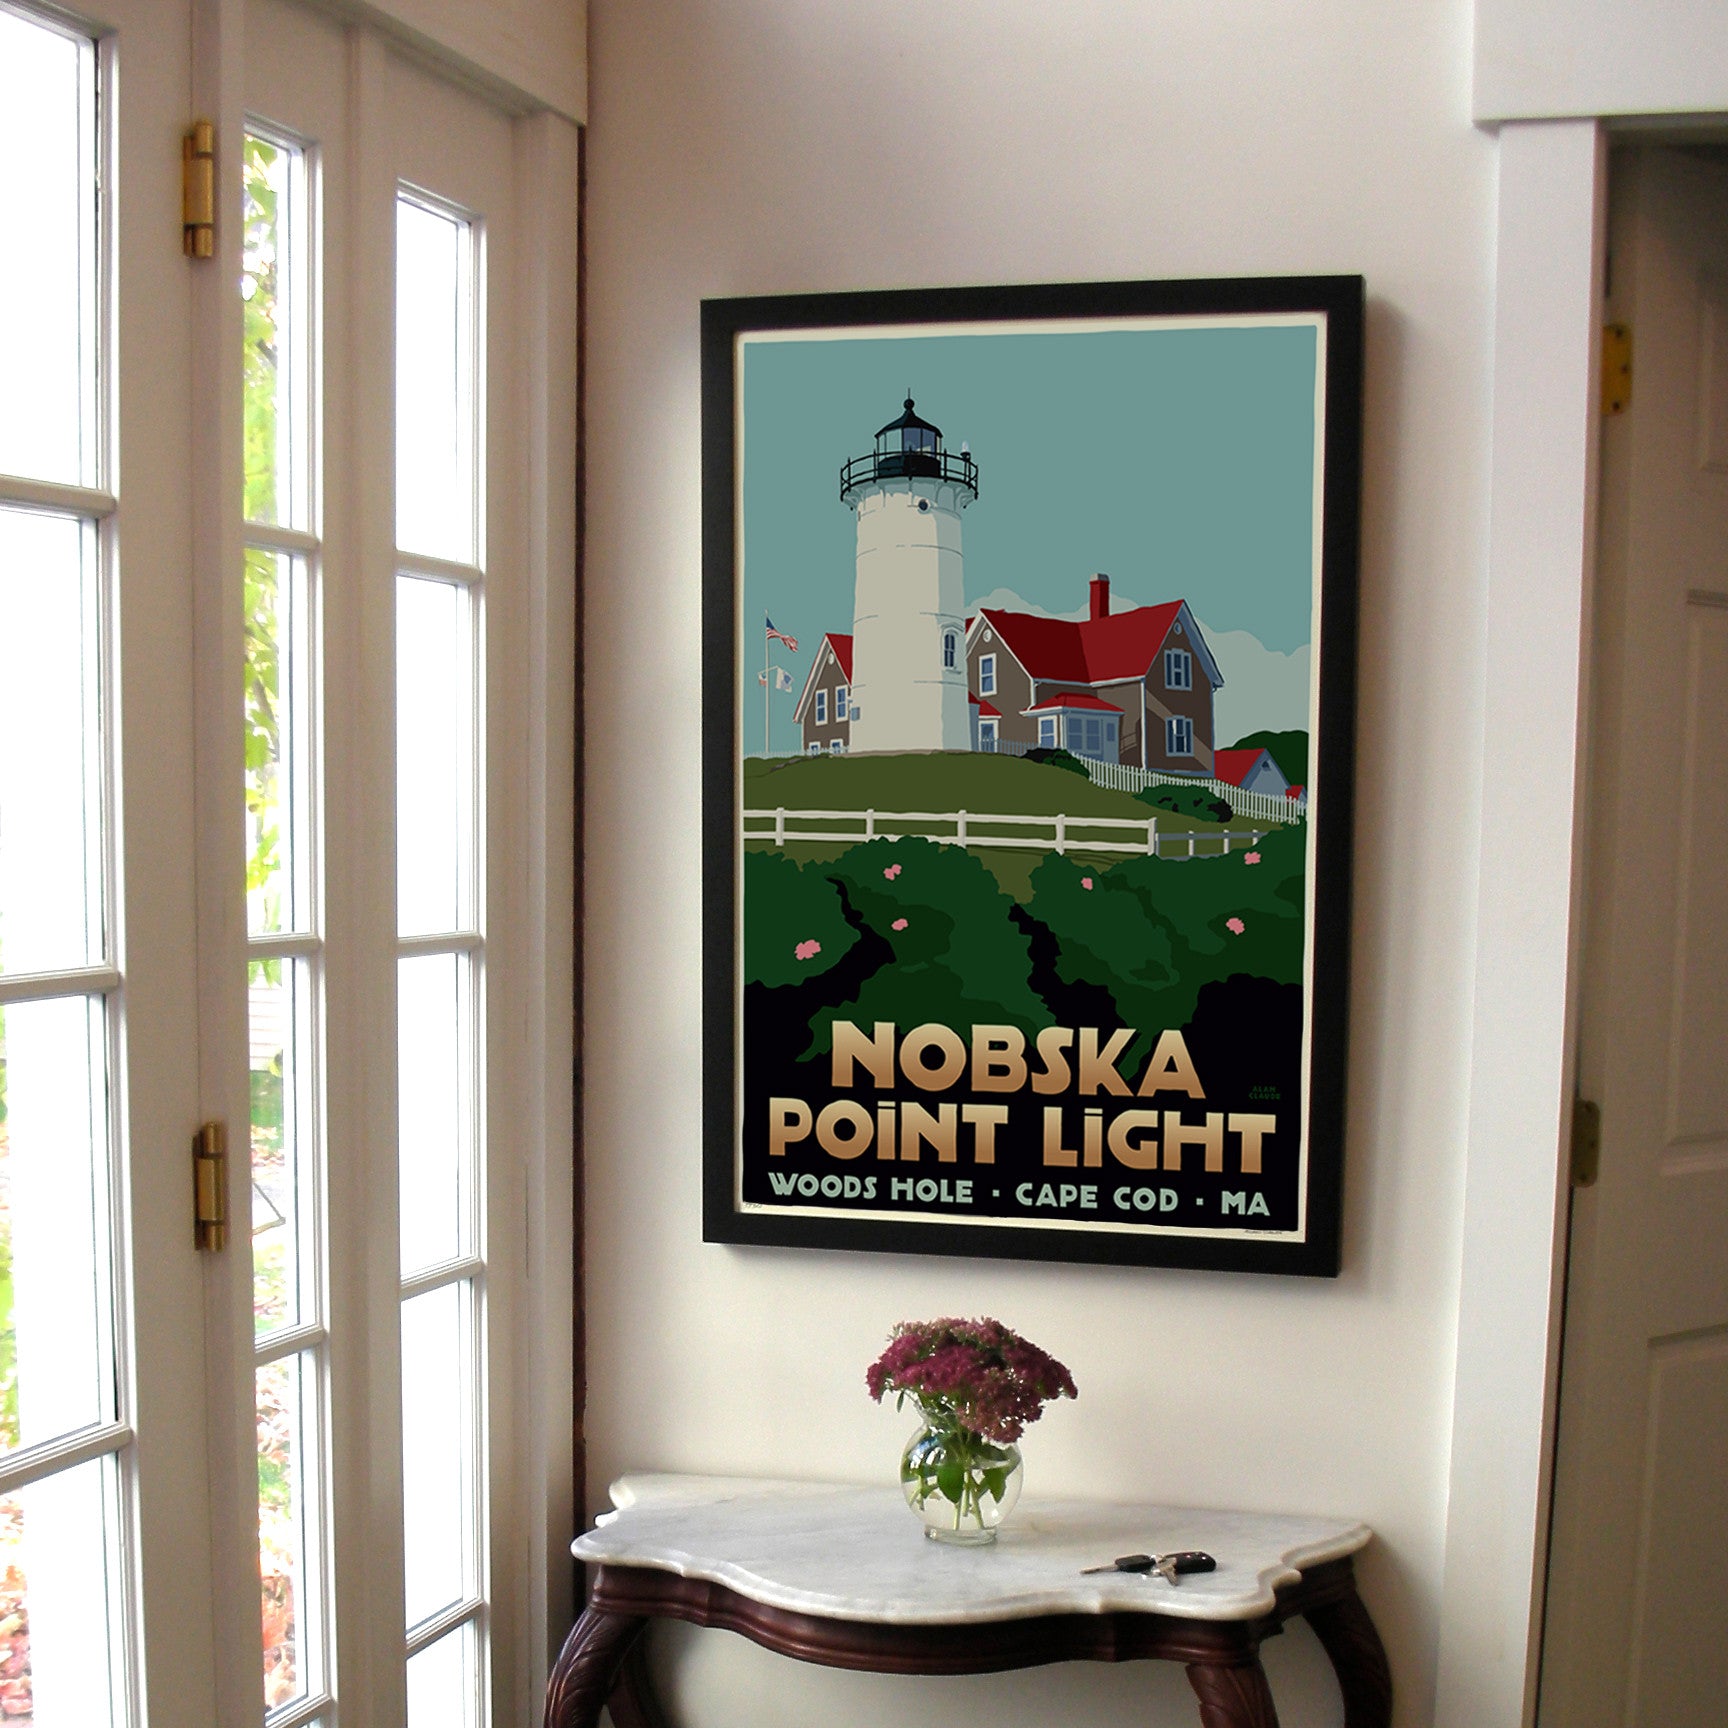 Nobska Point Light Art Print 24" x 36" Framed Travel Poster By Alan Claude  - Massachusetts